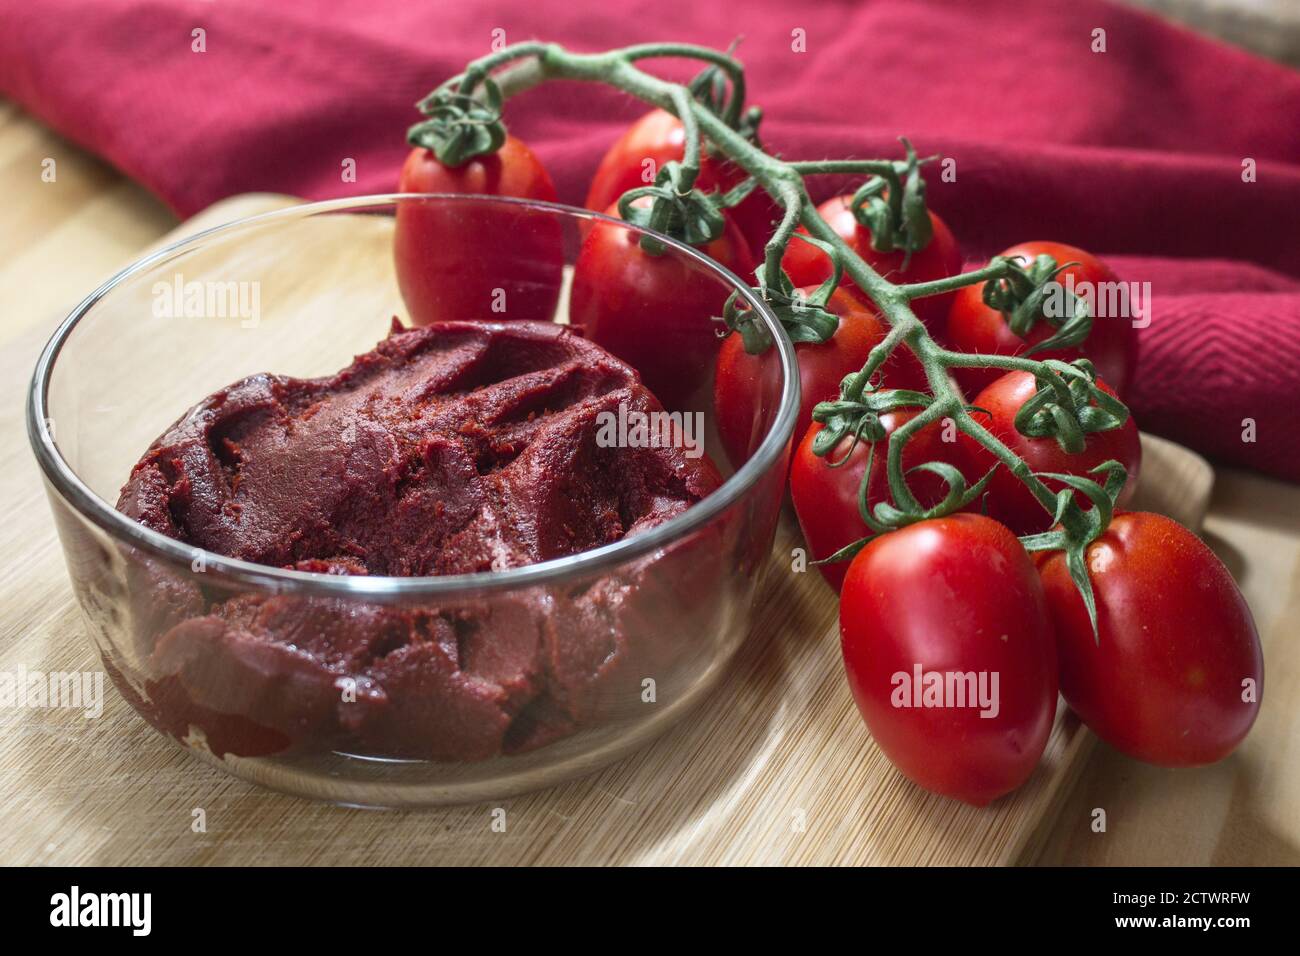 Sizilianische Produkte: Eine Schüssel mit konzentrierter Tomatensauce namens "Astratto", neben einem Bündel Piccadilly Tomaten. Stockfoto